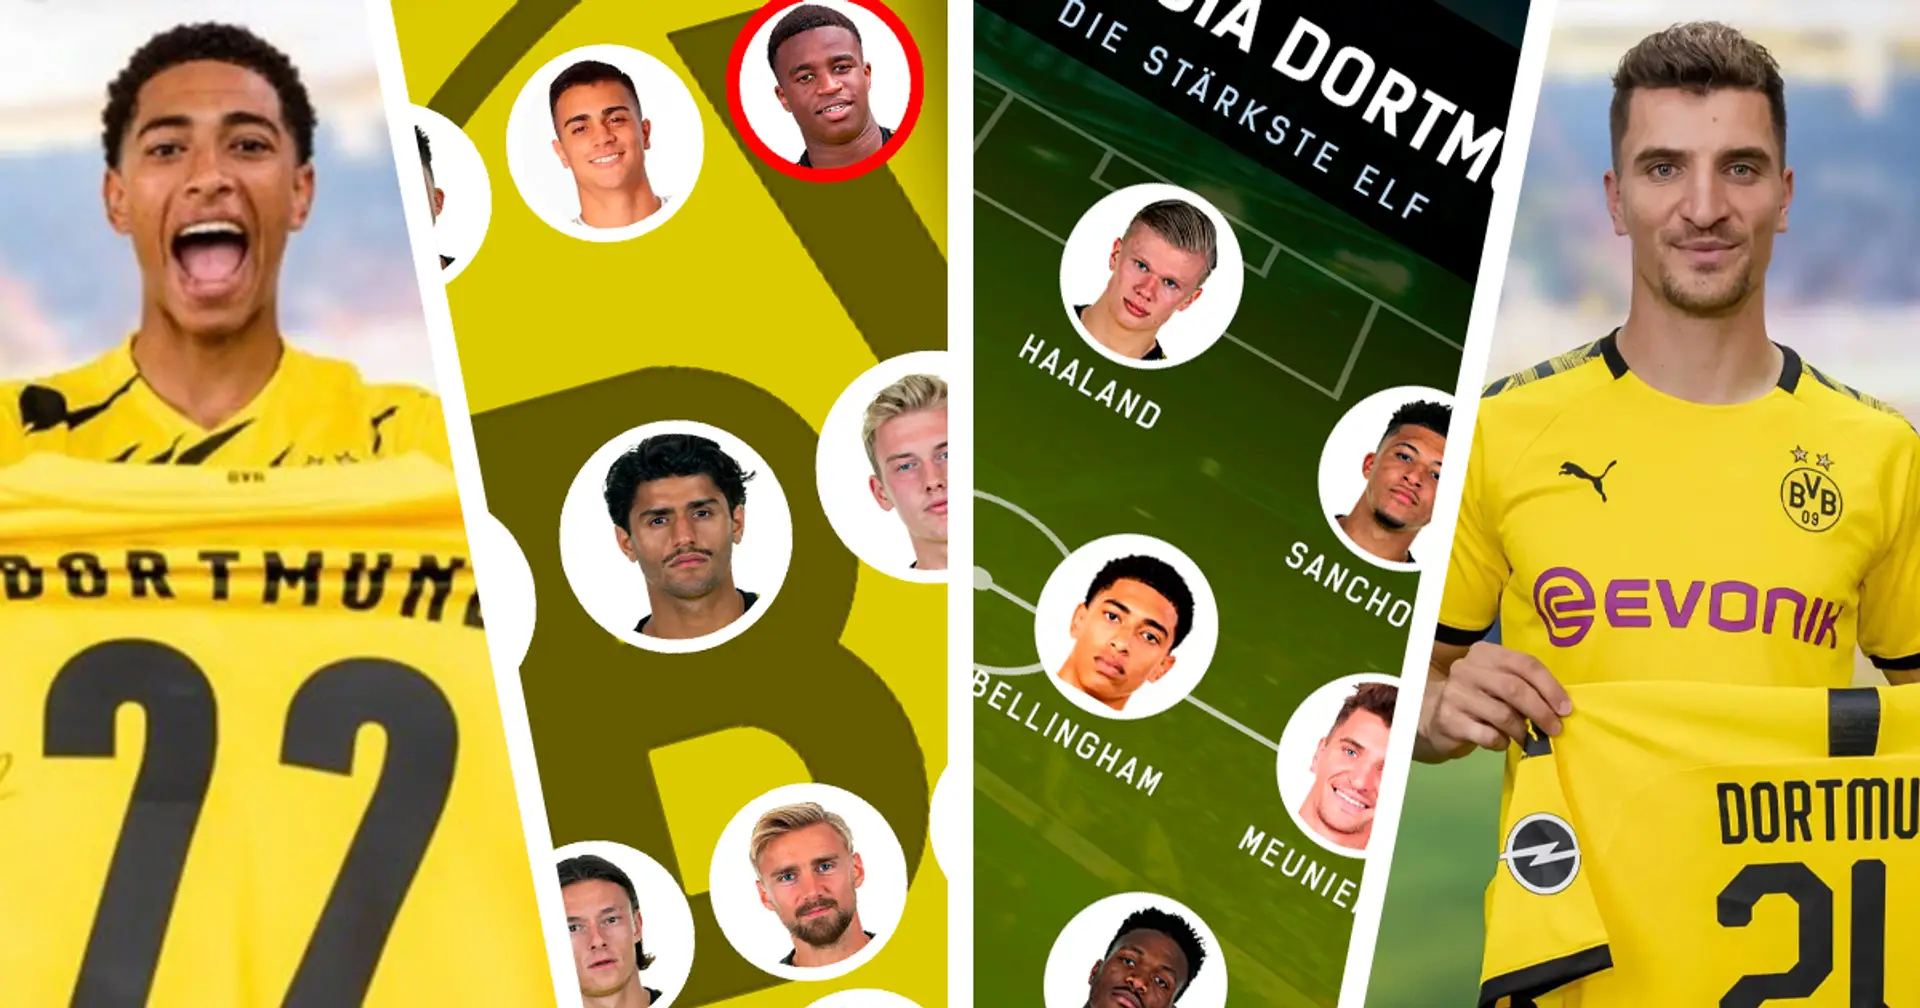 Der Kader des BVB nach dem Transferfenster und die stärkste Elf der Dortmunder